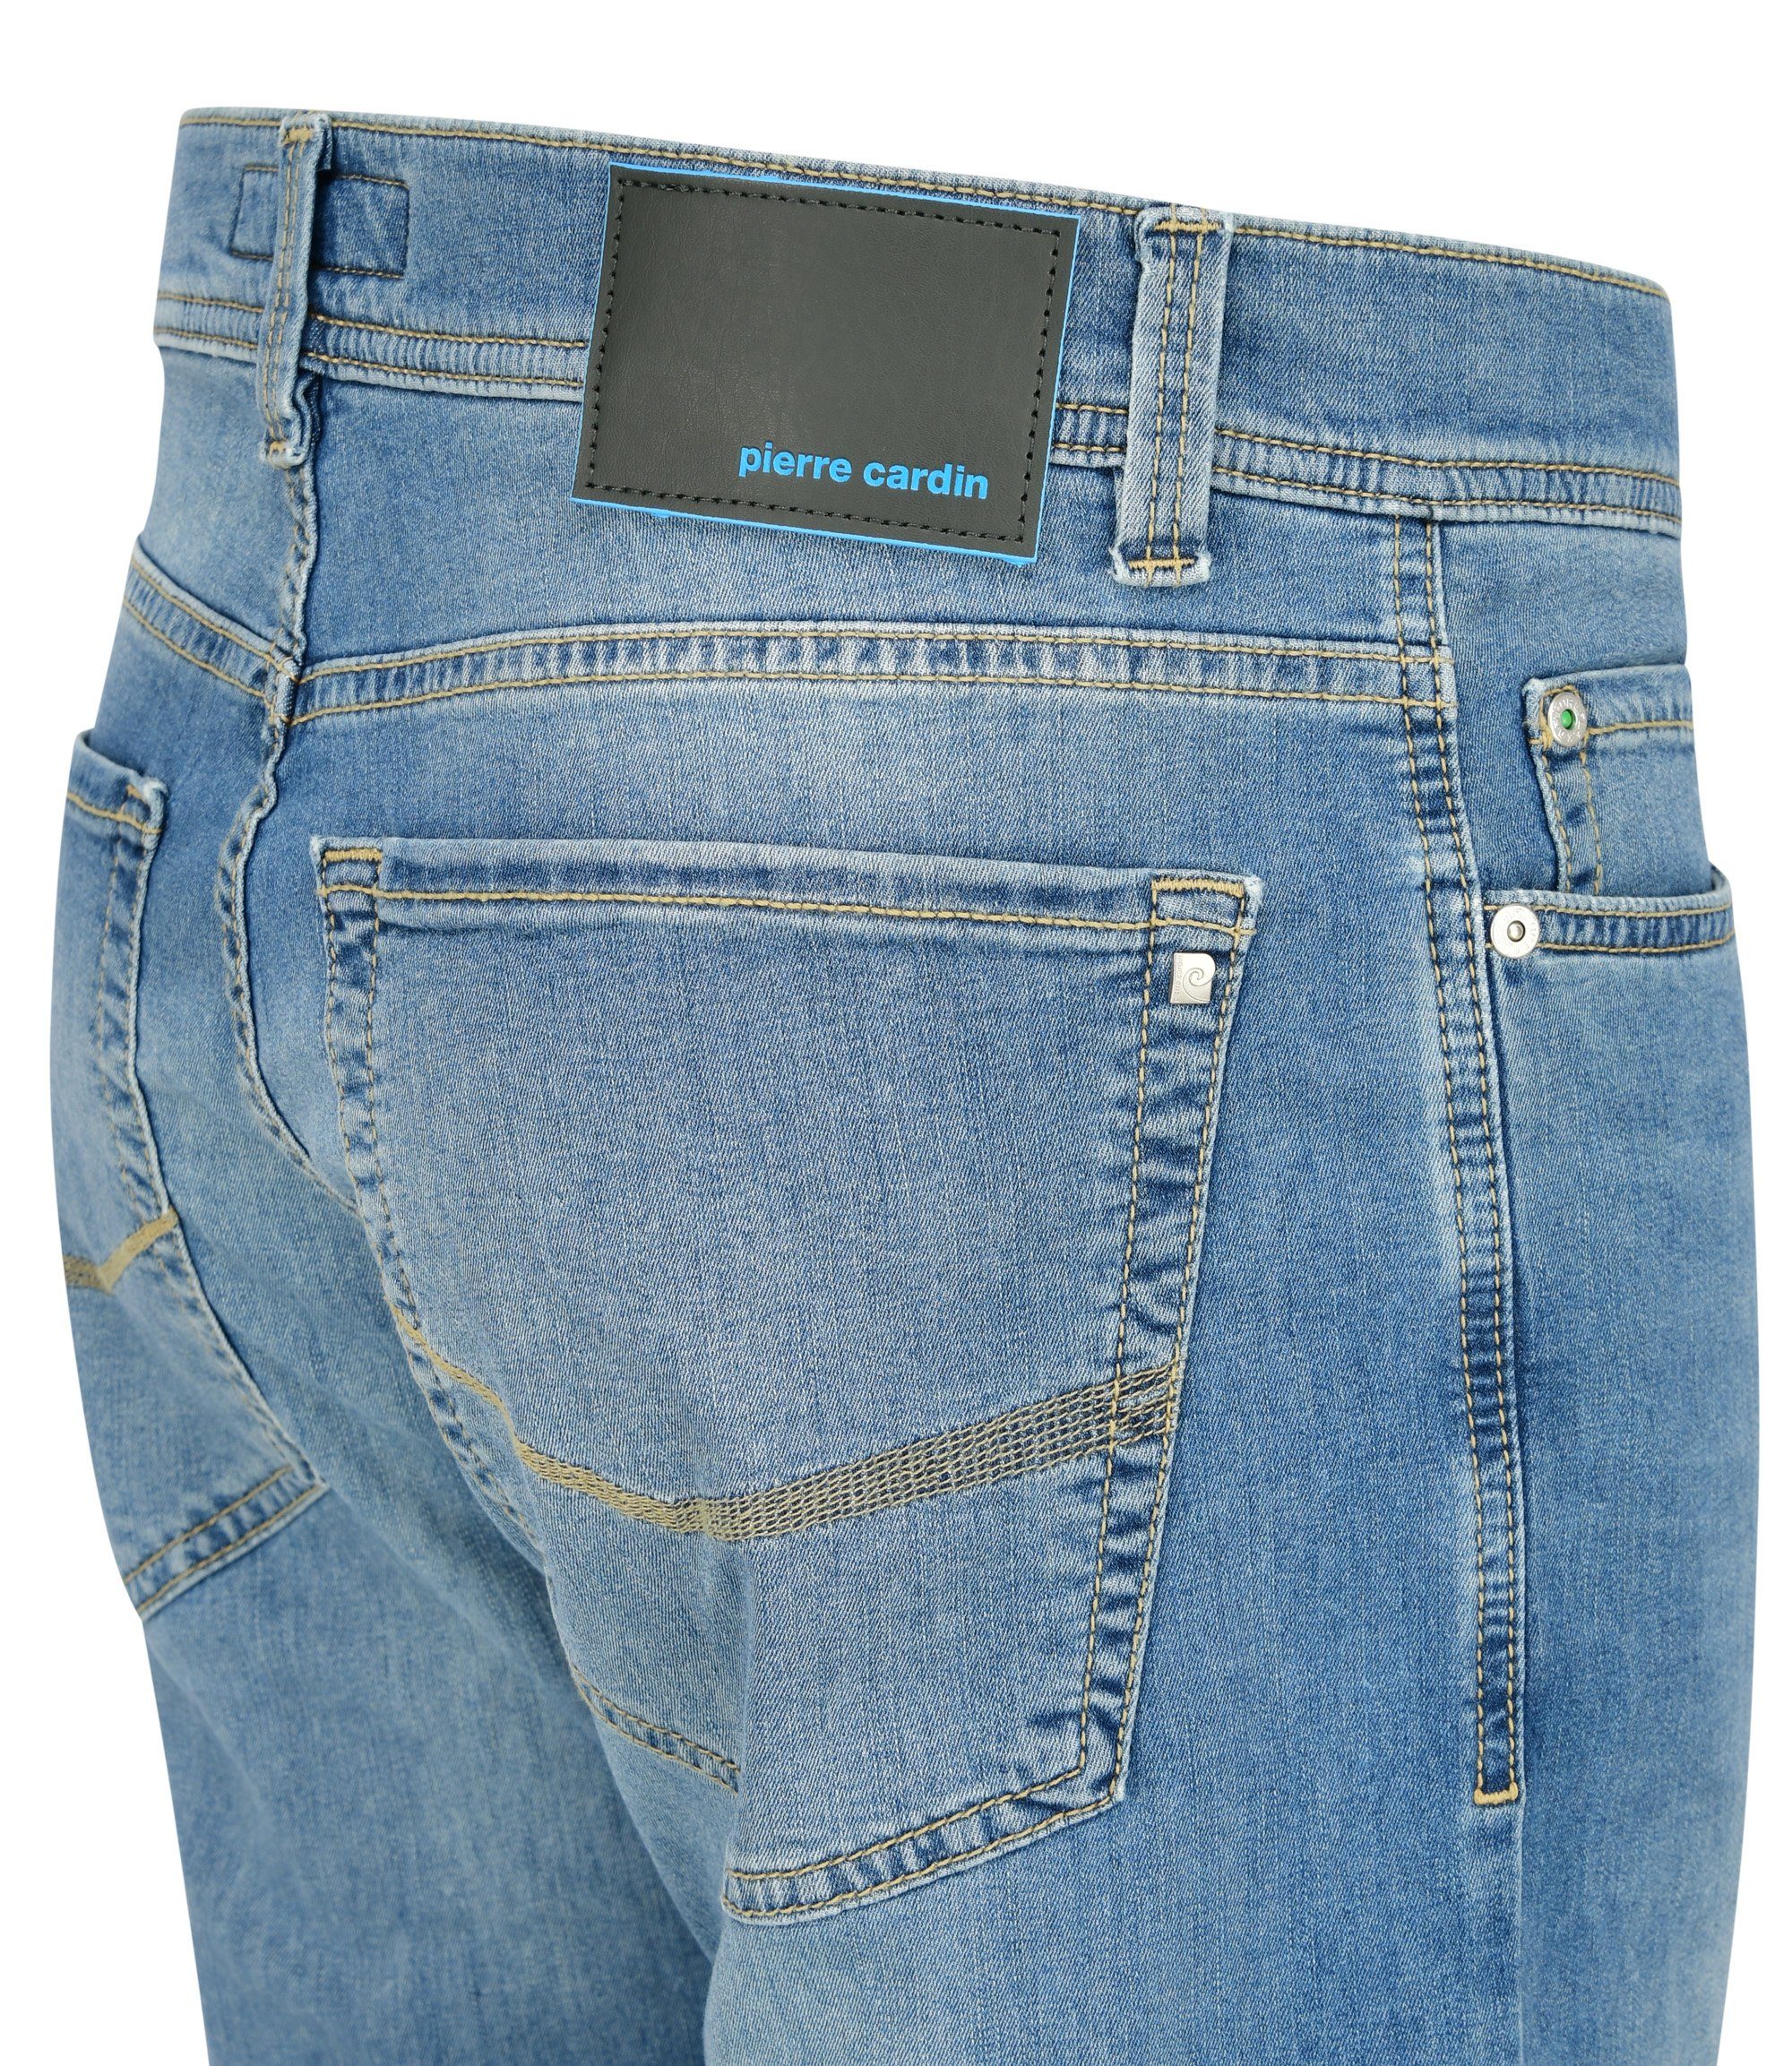 Pierre Cardin 5-Pocket-Jeans light buffies blue 8021.6844 - used 34510 CARDIN TAPERED LYON PIERRE